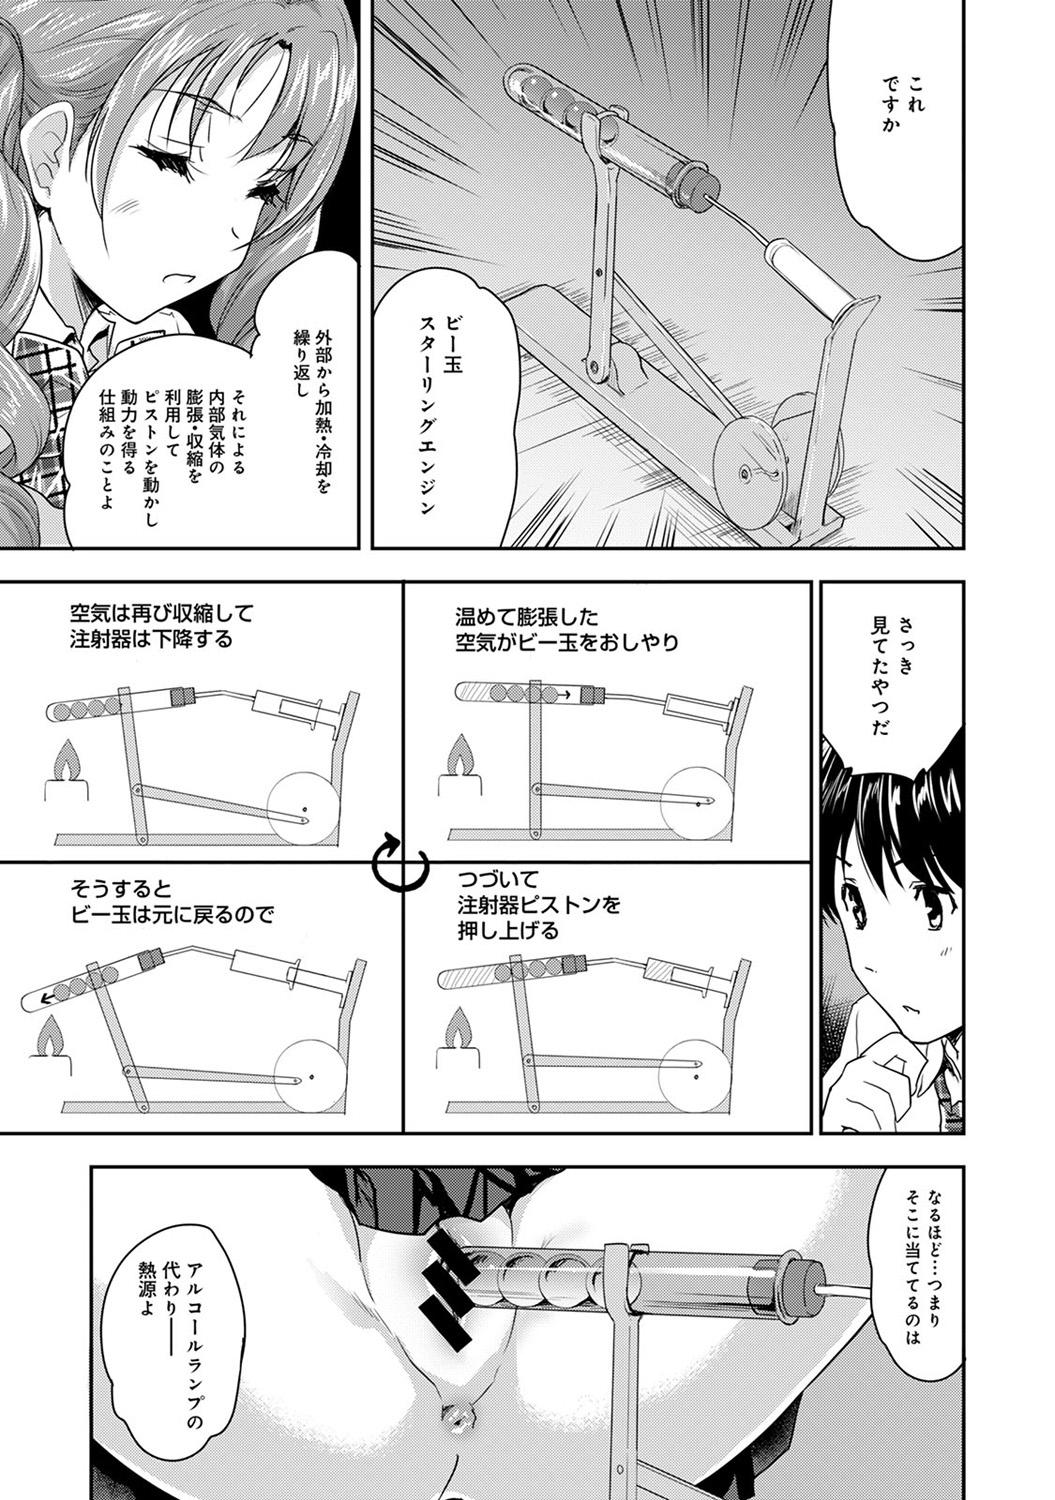 Nudist COMIC Ananga Ranga Vol. 12 Anime - Page 9